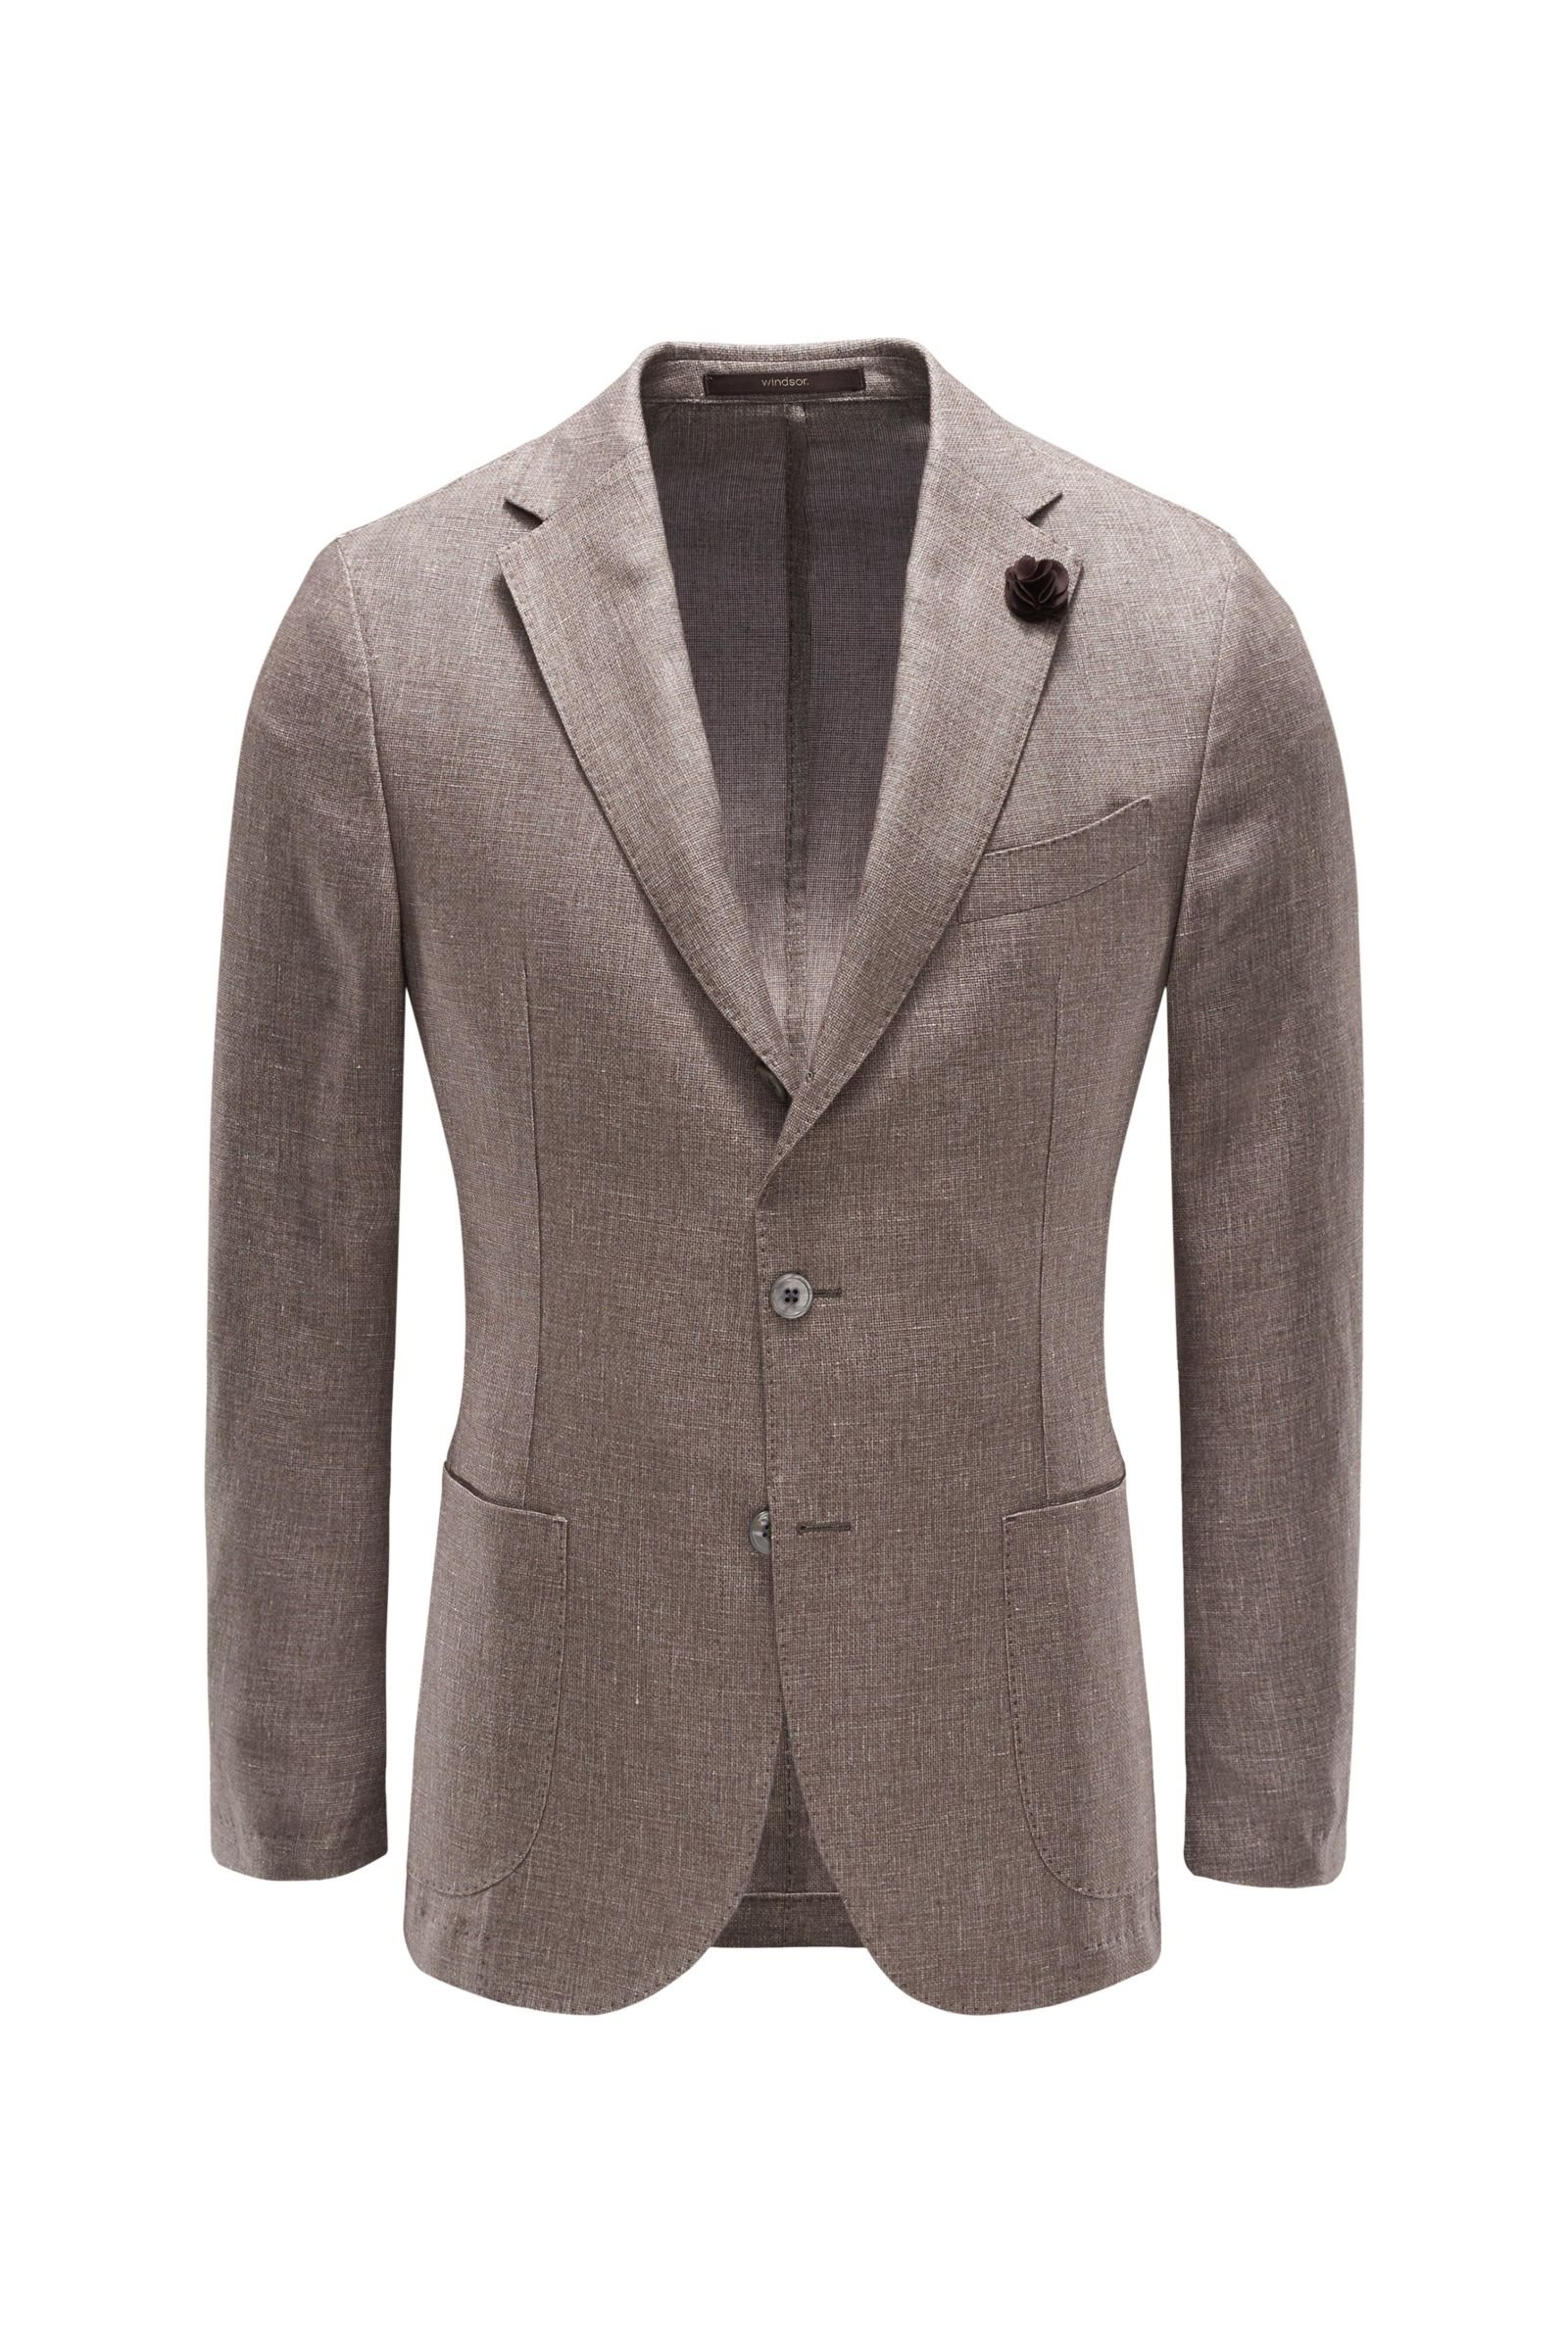 Smart-casual jacket 'Camicia' grey-brown